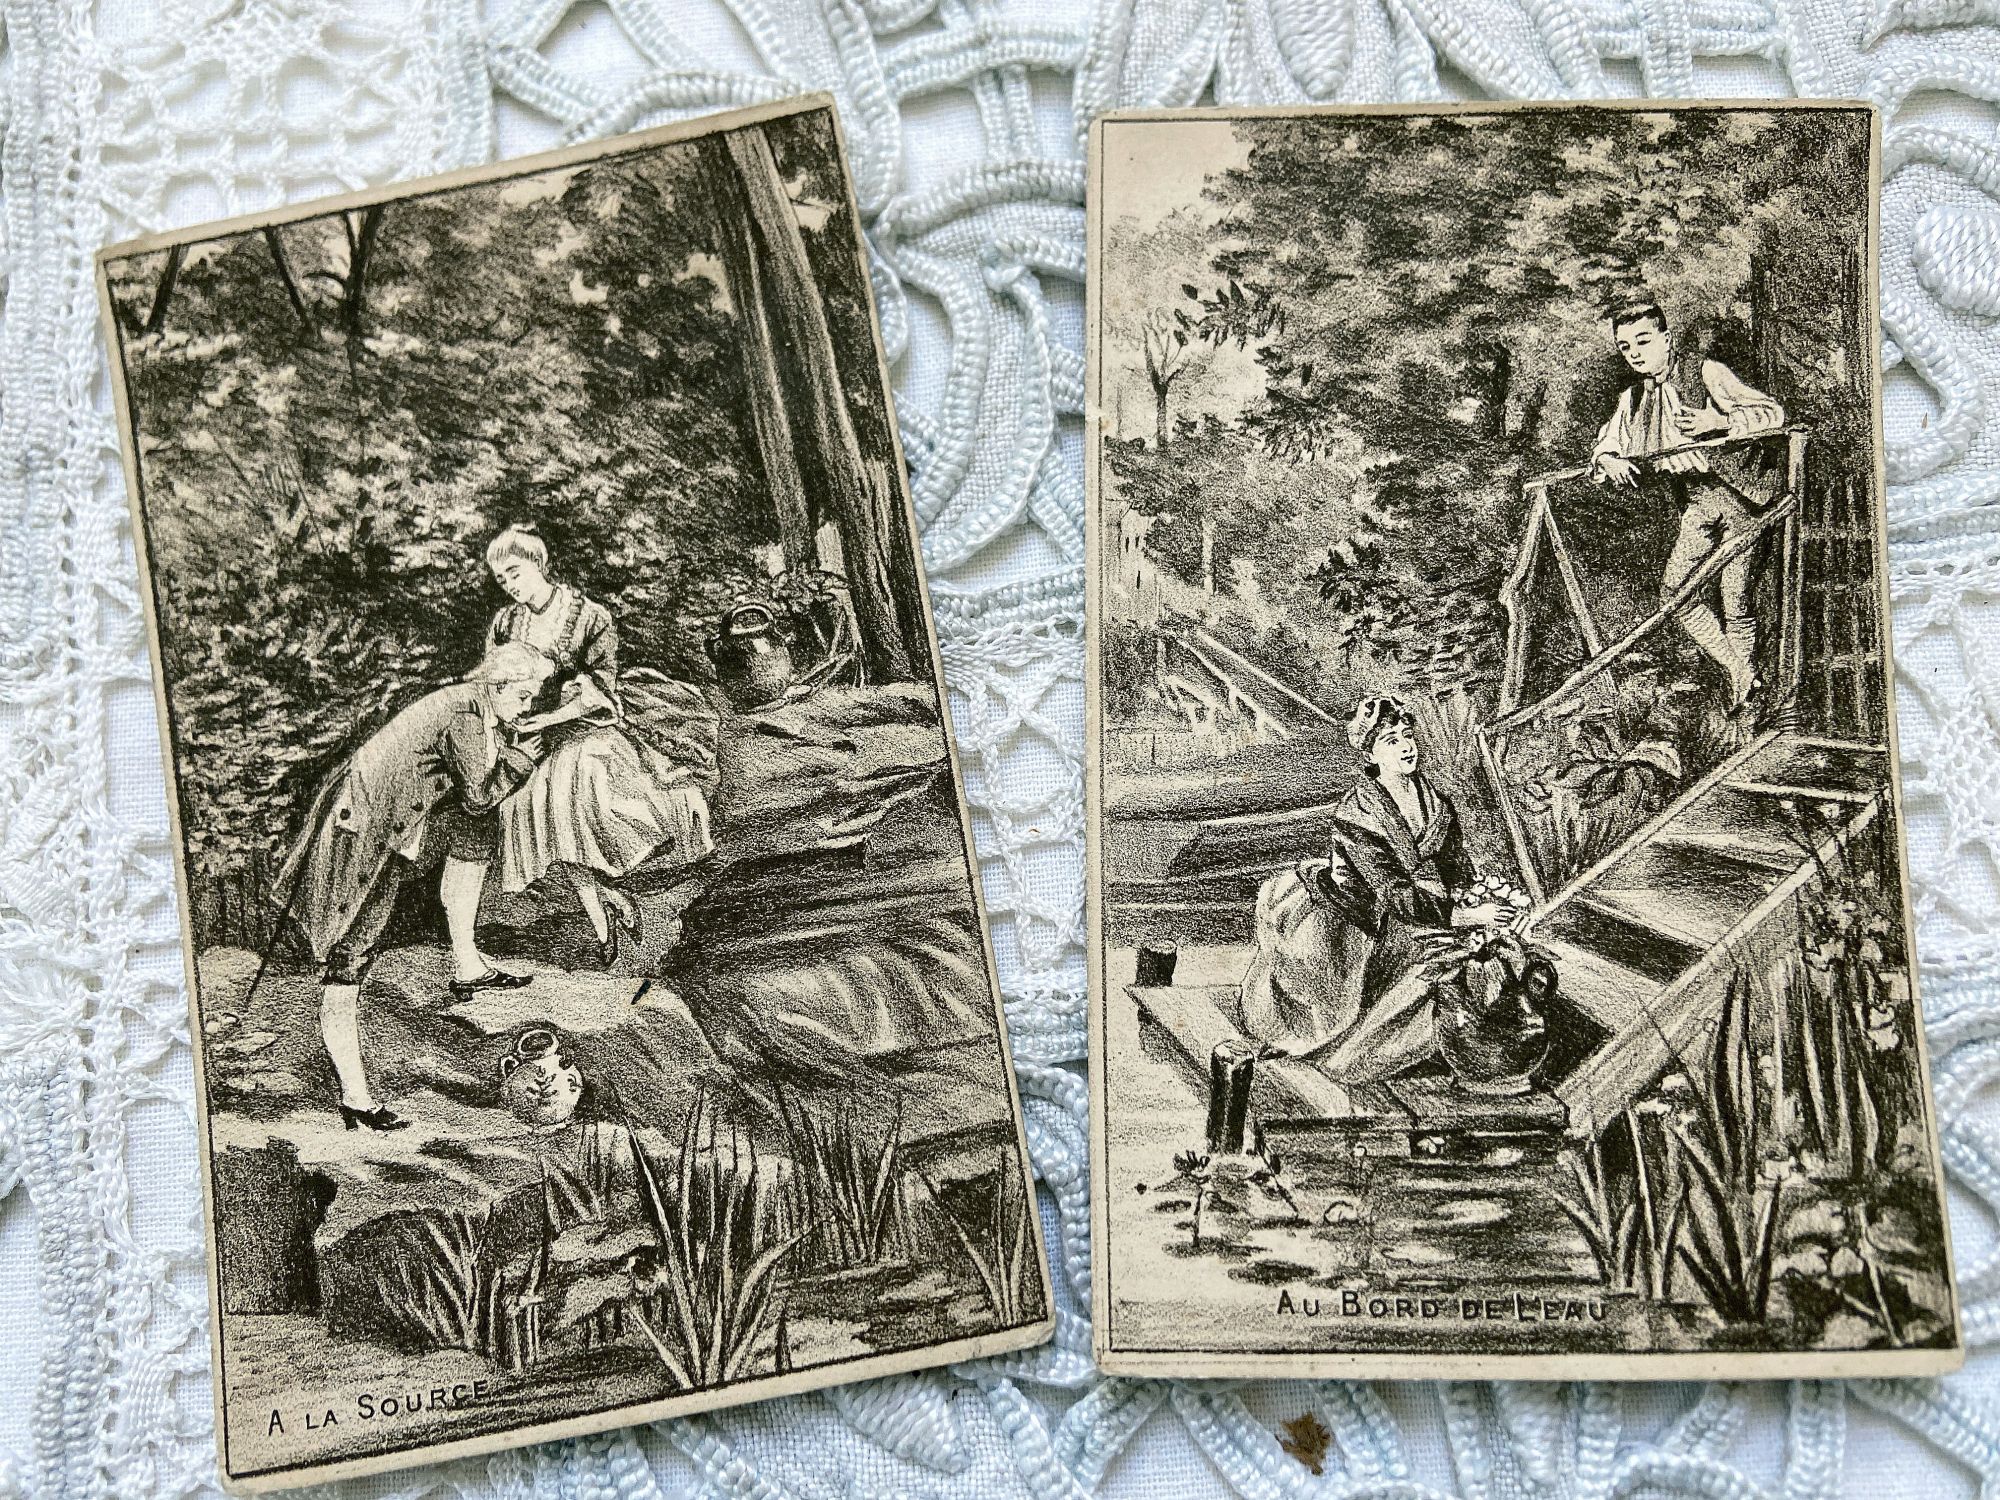 Two Vintage French postcards "A la source" et "Au bord de l'eau" from 1910s